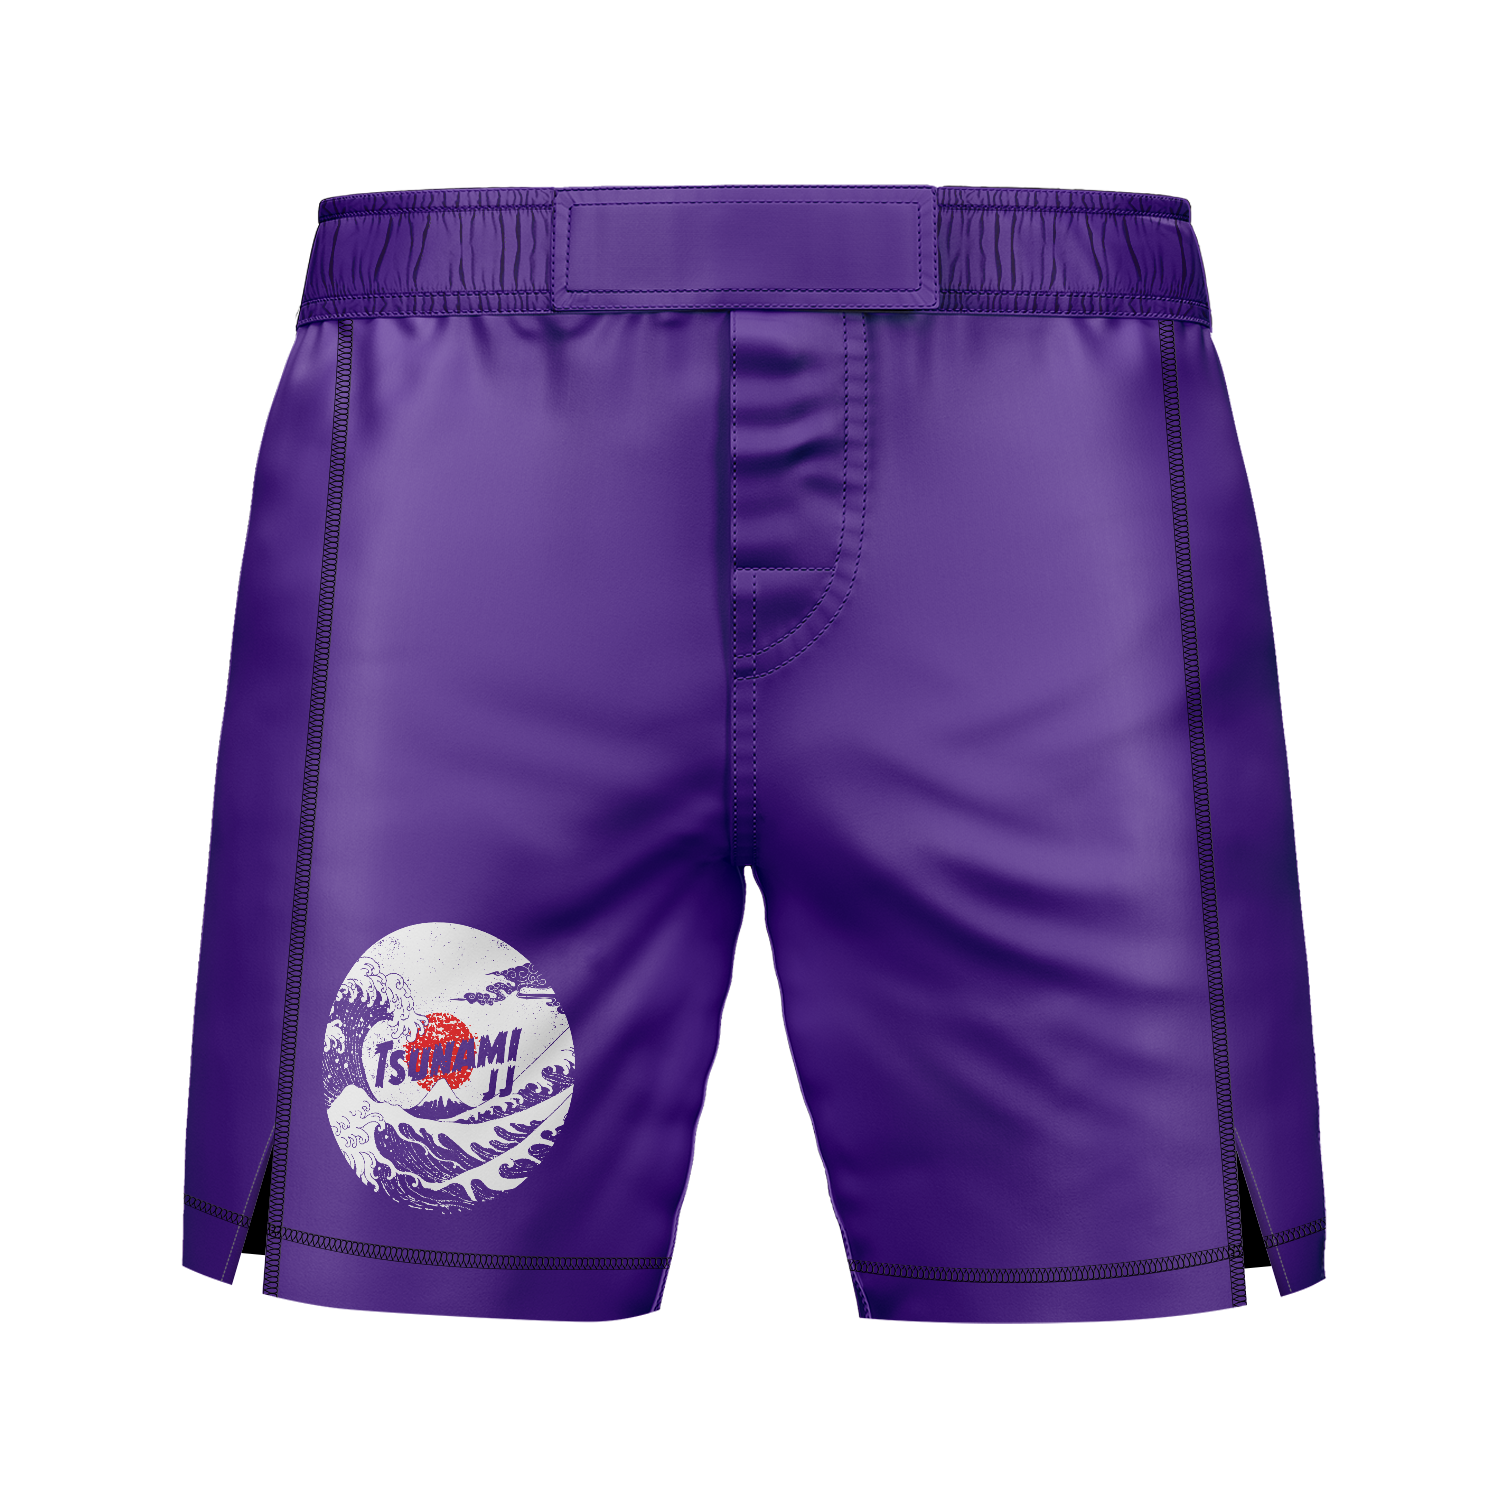 Tsunami JJ men's 7" fight shorts Ranked, purple